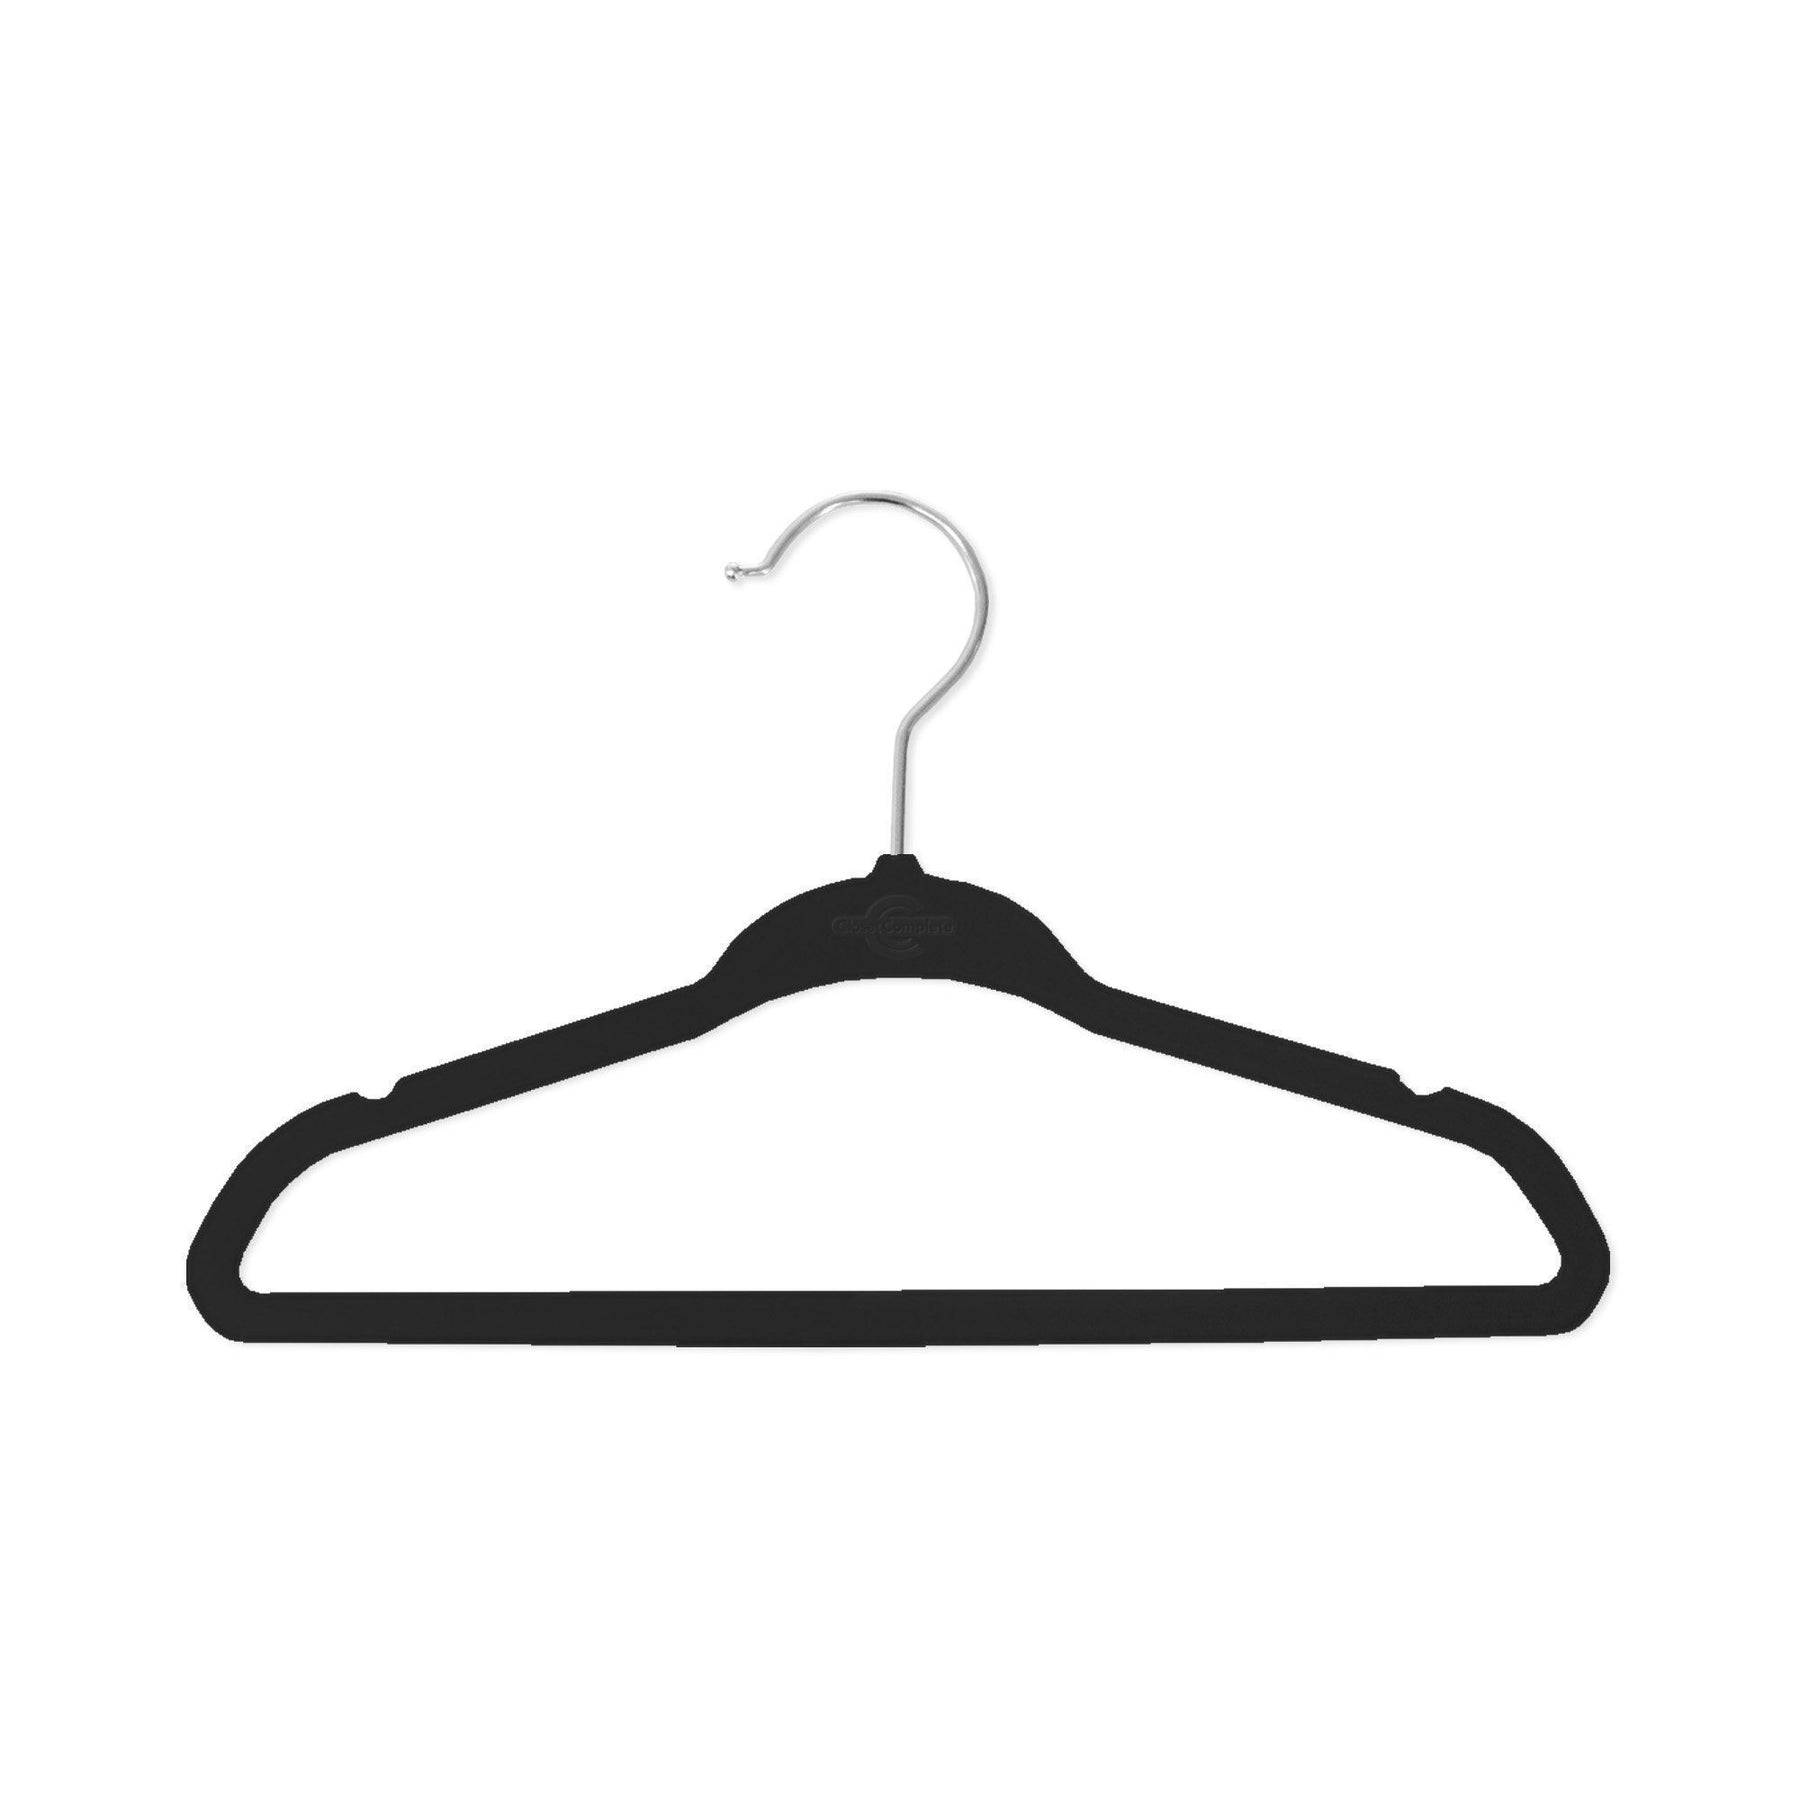 https://www.closetcomplete.com/cdn/shop/products/closet-complete-velvet-hangers-baby-sized-velvet-hangers-71672-7162082951253_1800x1800.jpg?v=1552521250